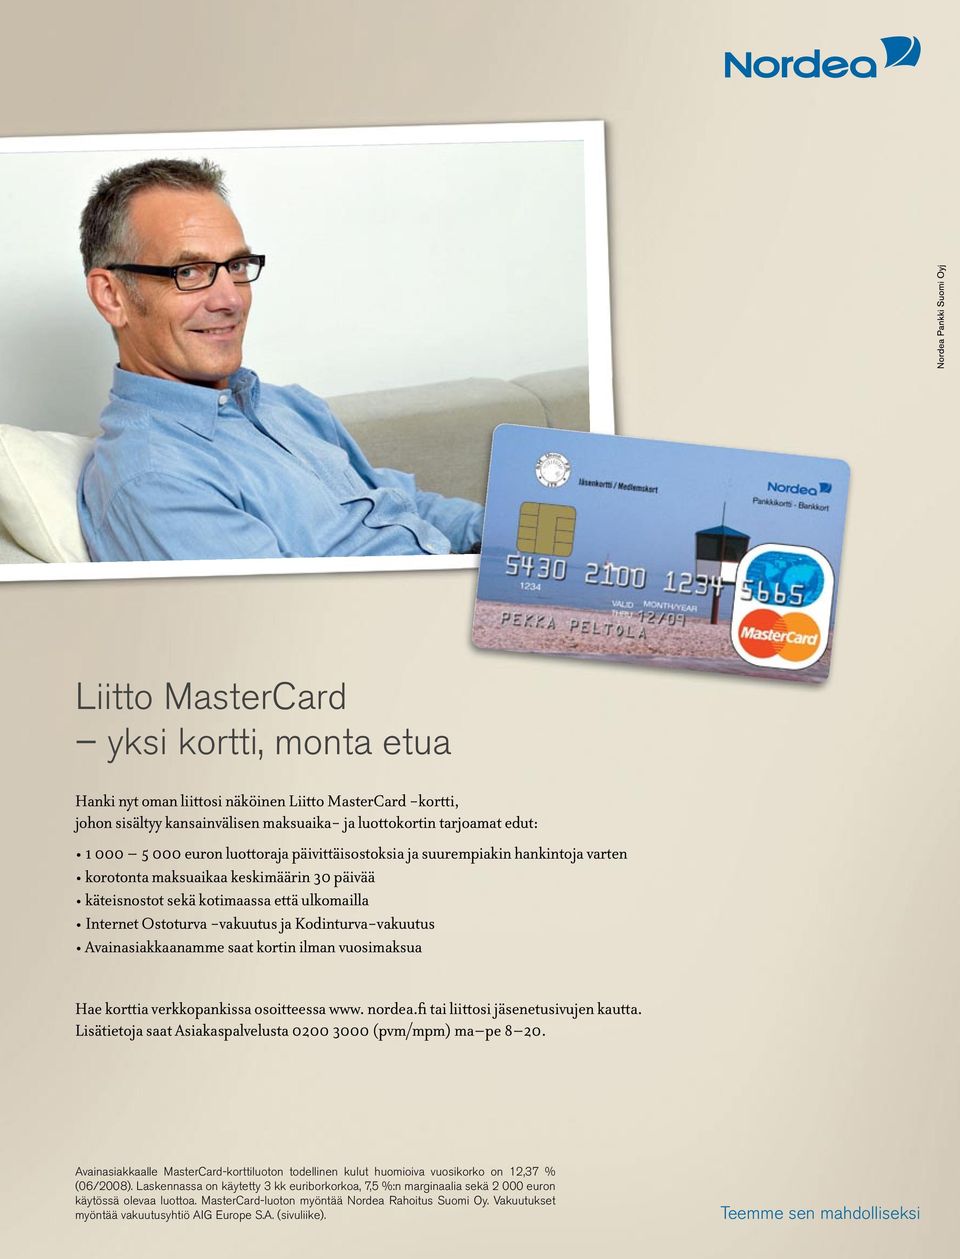 Kodinturva-vakuutus Avainasiakkaanamme saat kortin ilman vuosimaksua Hae korttia verkkopankissa osoitteessa www. nordea.fi tai liittosi jäsenetusivujen kautta.